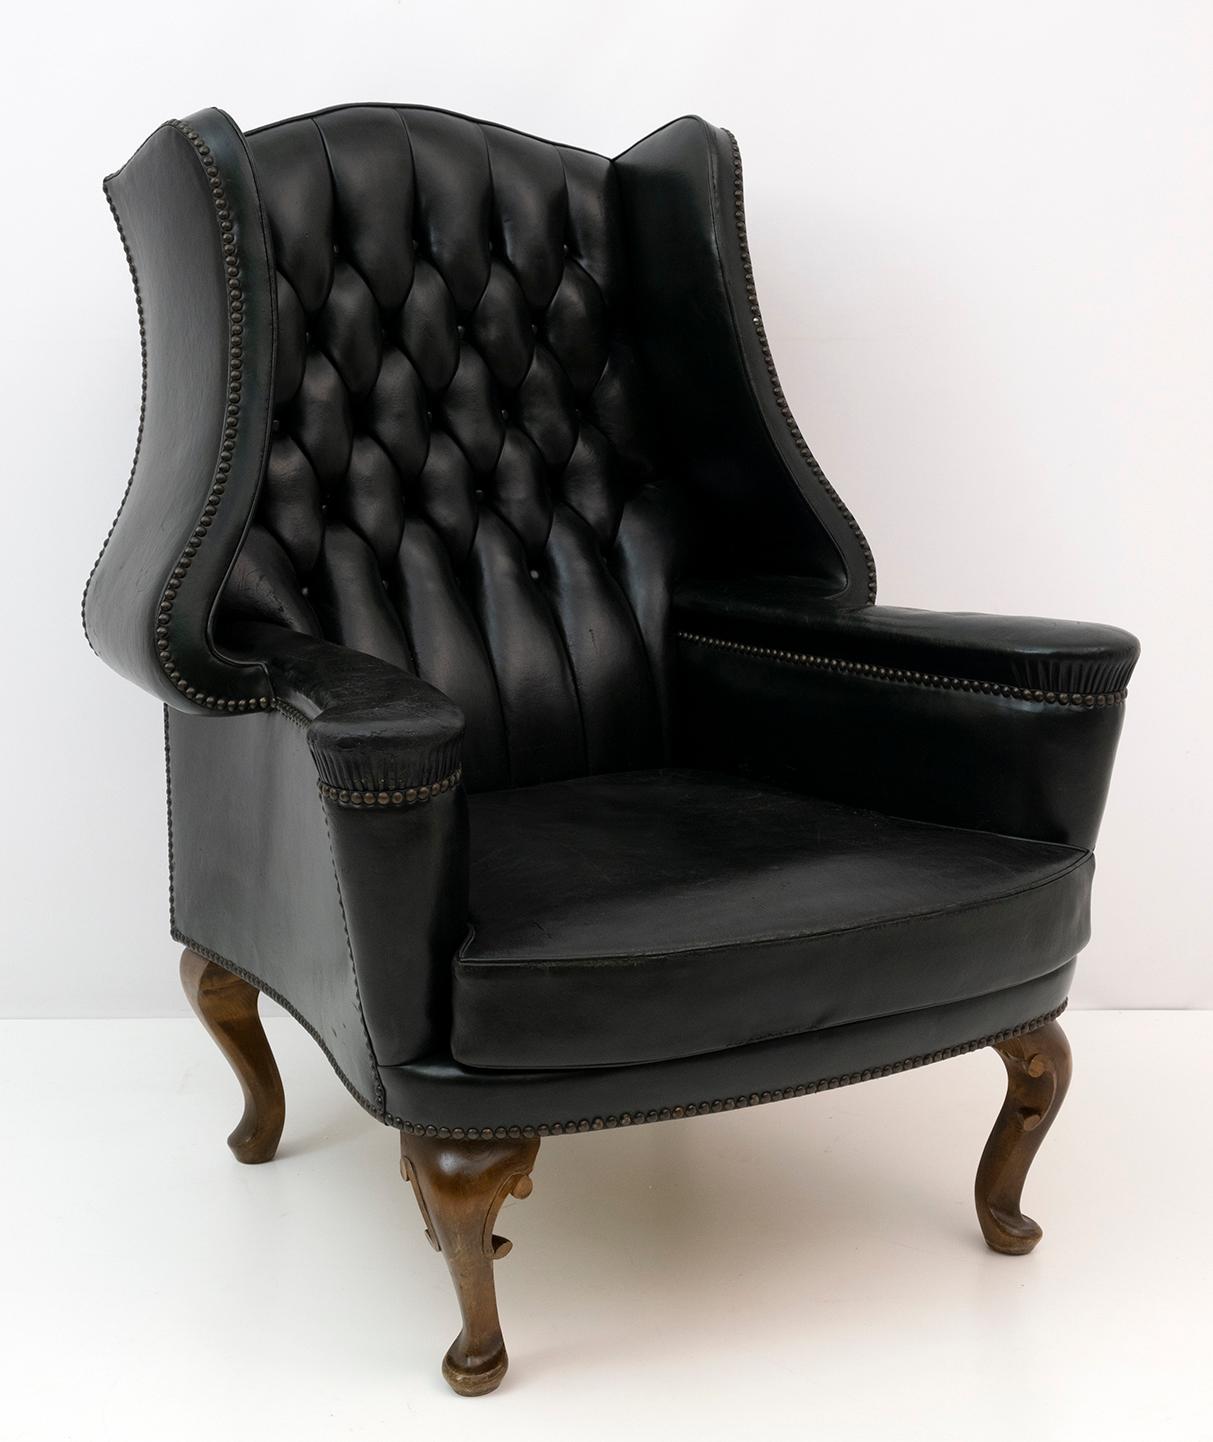 Wir freuen uns, diesen seltenen und originalen Sessel im georgianischen Stil zum Verkauf anbieten zu können. Ein sehr schönes Sammlerstück und dekorativer Sessel. Er wurde nach den frühen gotischen Entwürfen aus Massivholz gefertigt, ist aber eine